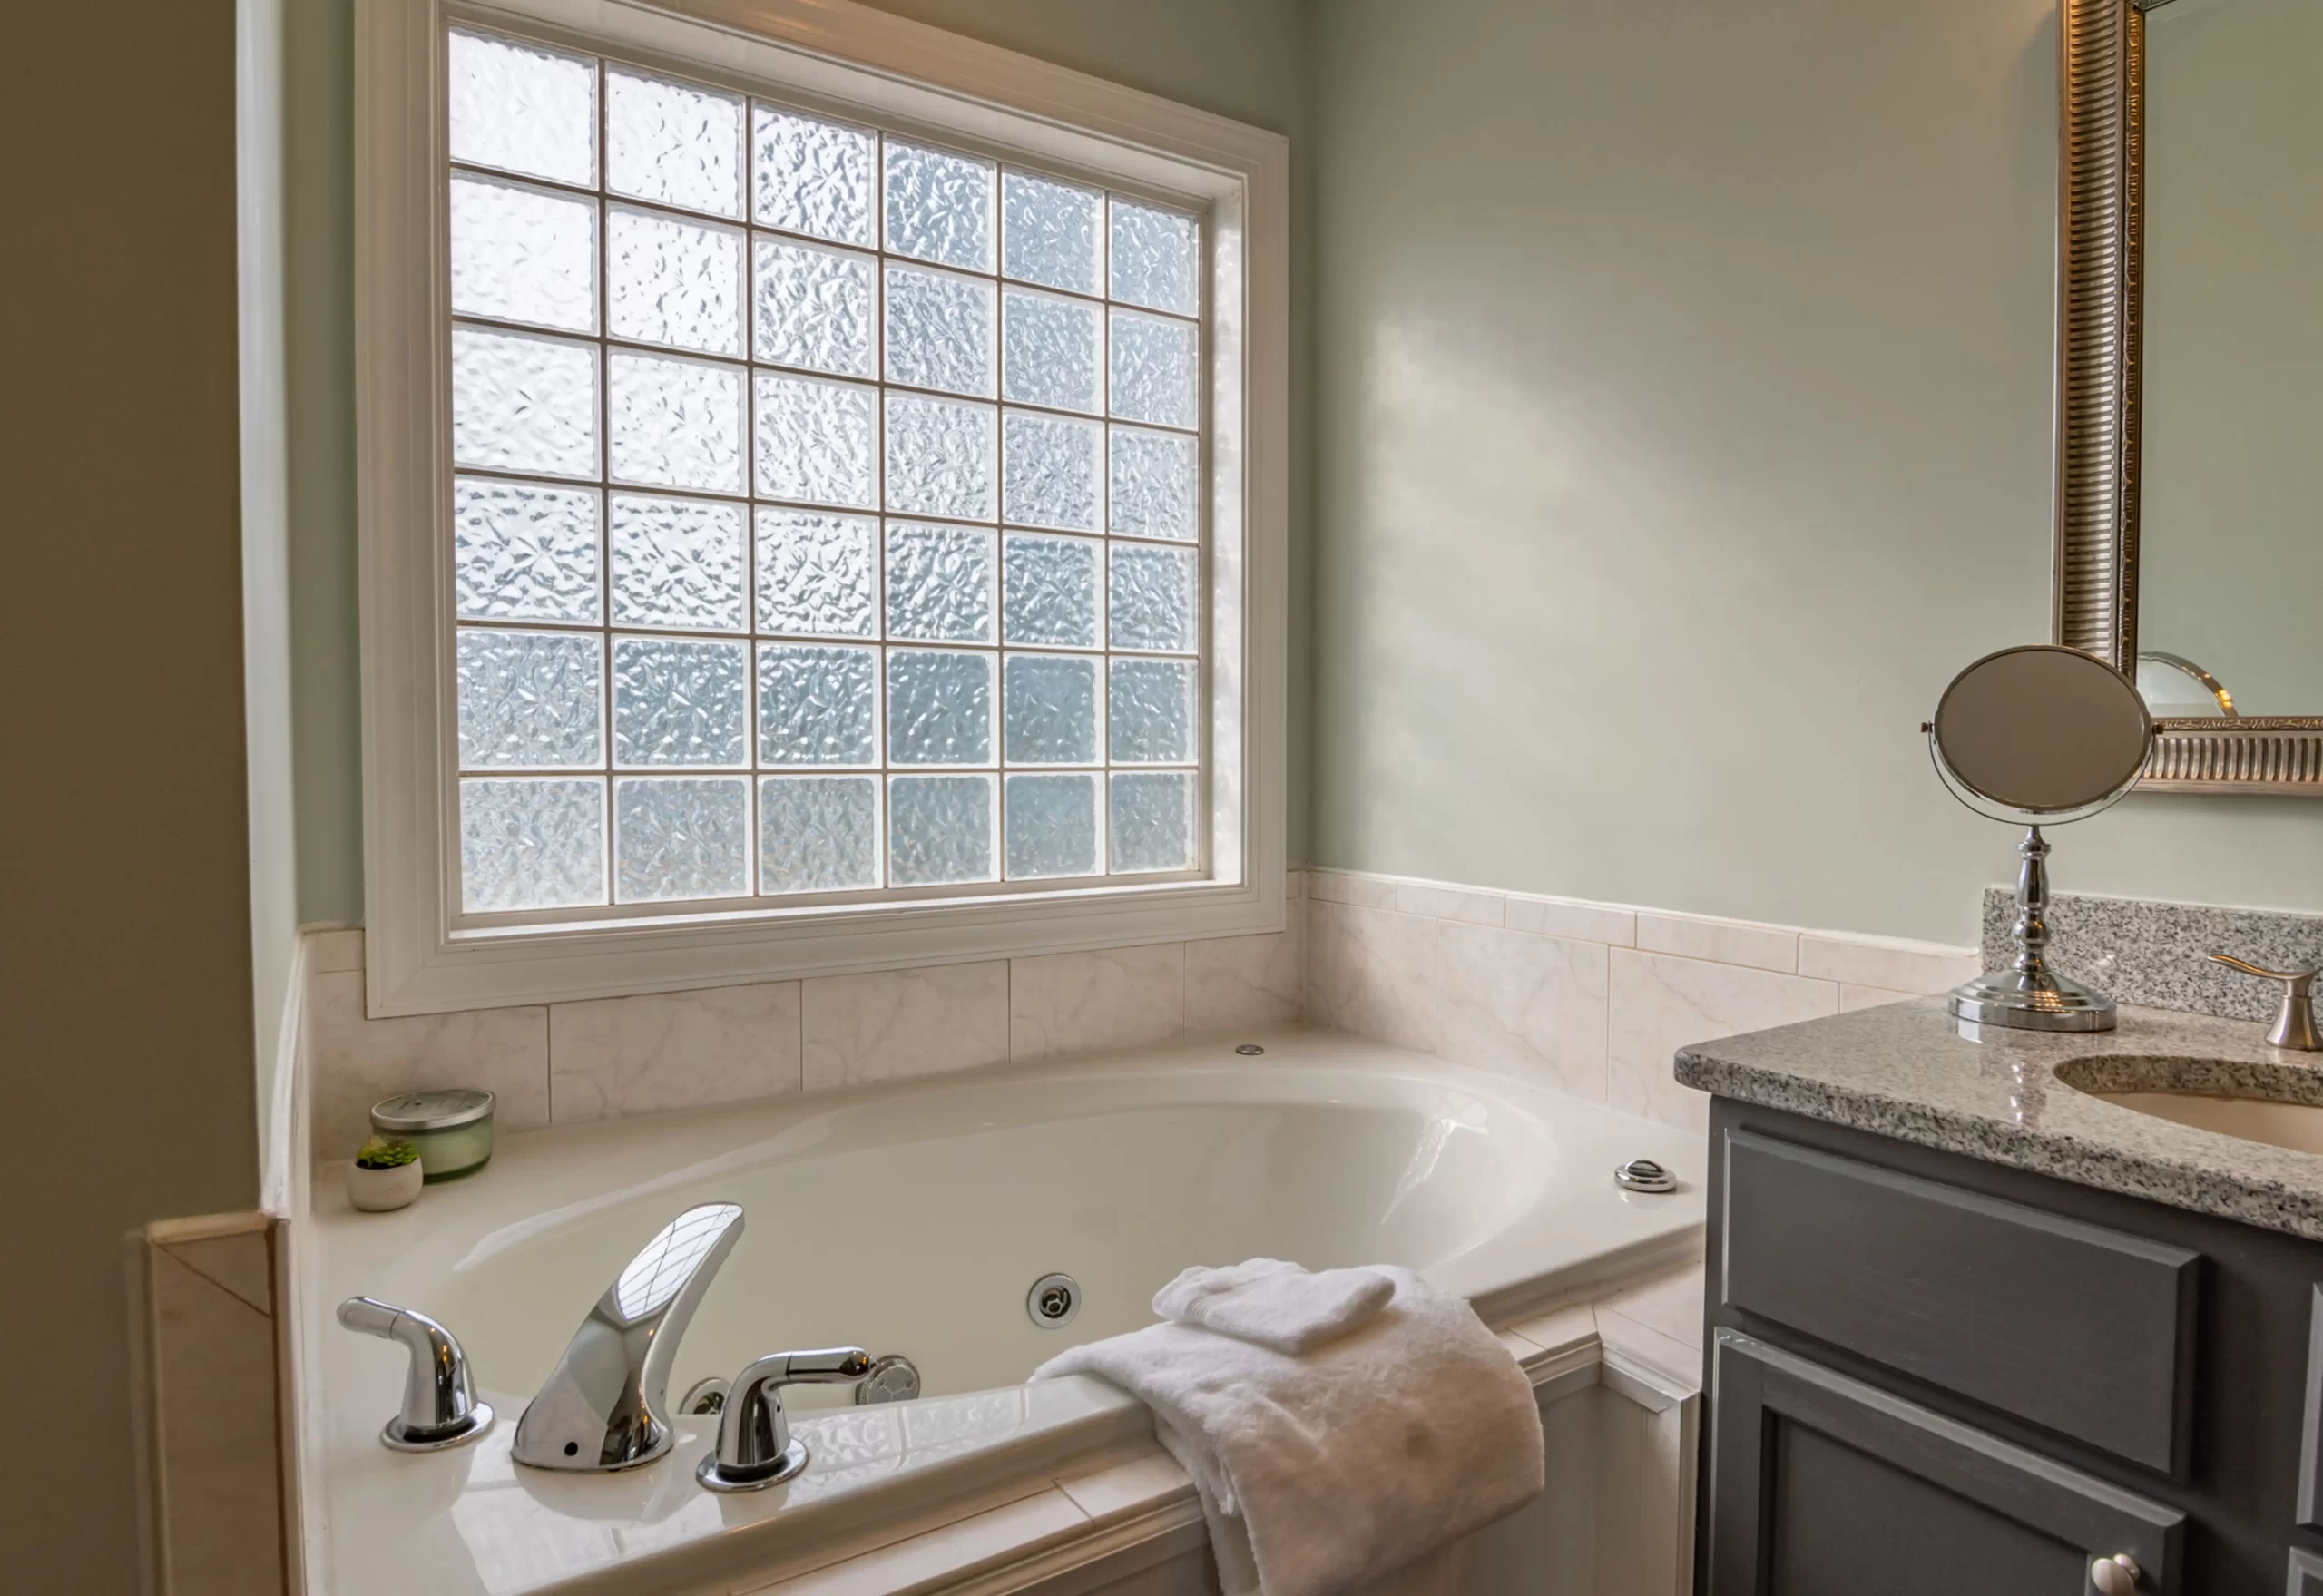 Bathtub design with a window in bathroom.